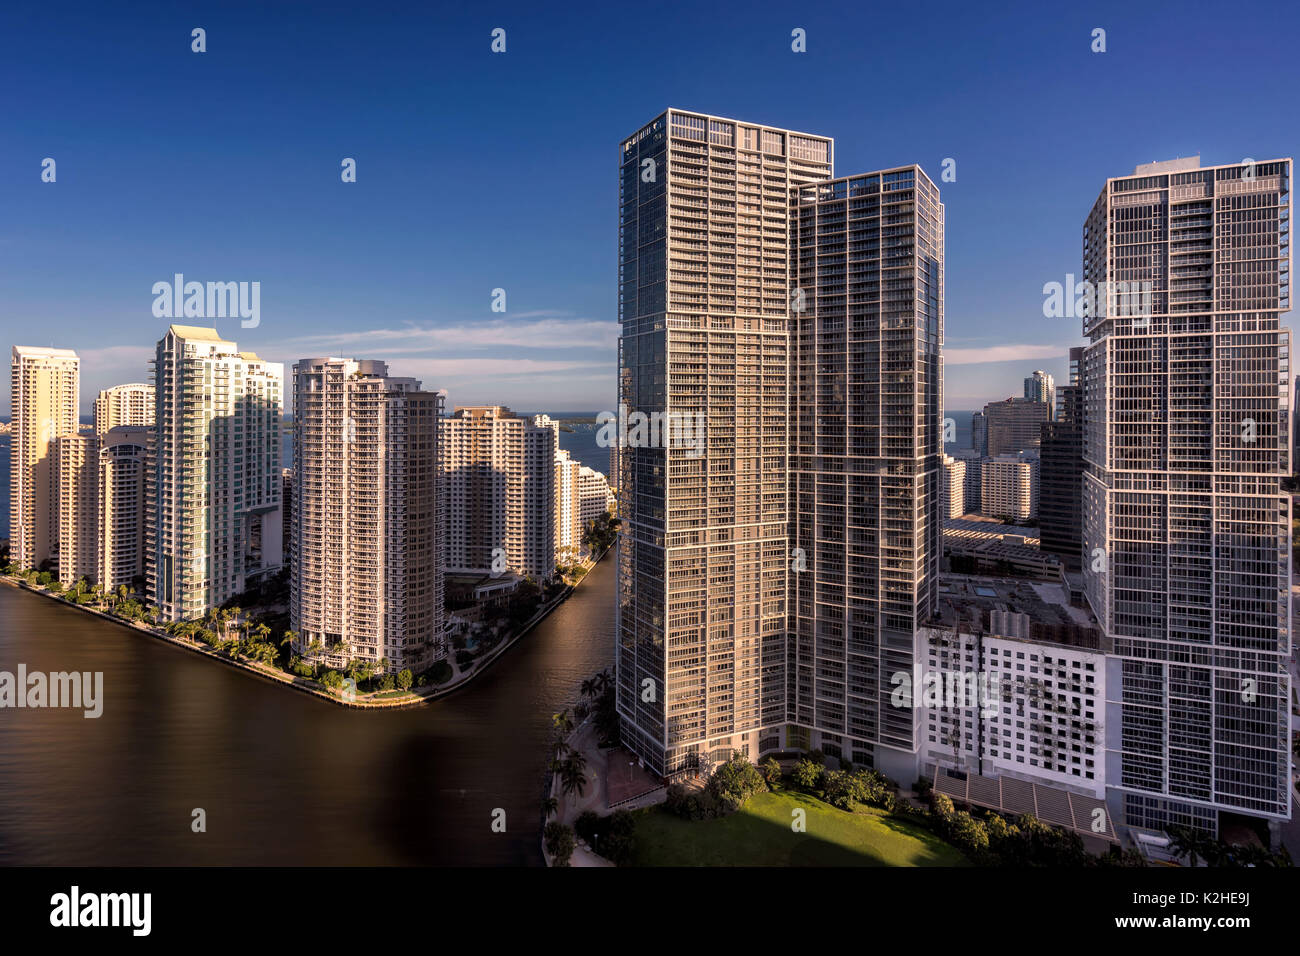 Brickell Miami Skyline bei Sonnenuntergang. Dieses Bild zeigt einige der Hochhäuser in Miami, Florida. Stockfoto